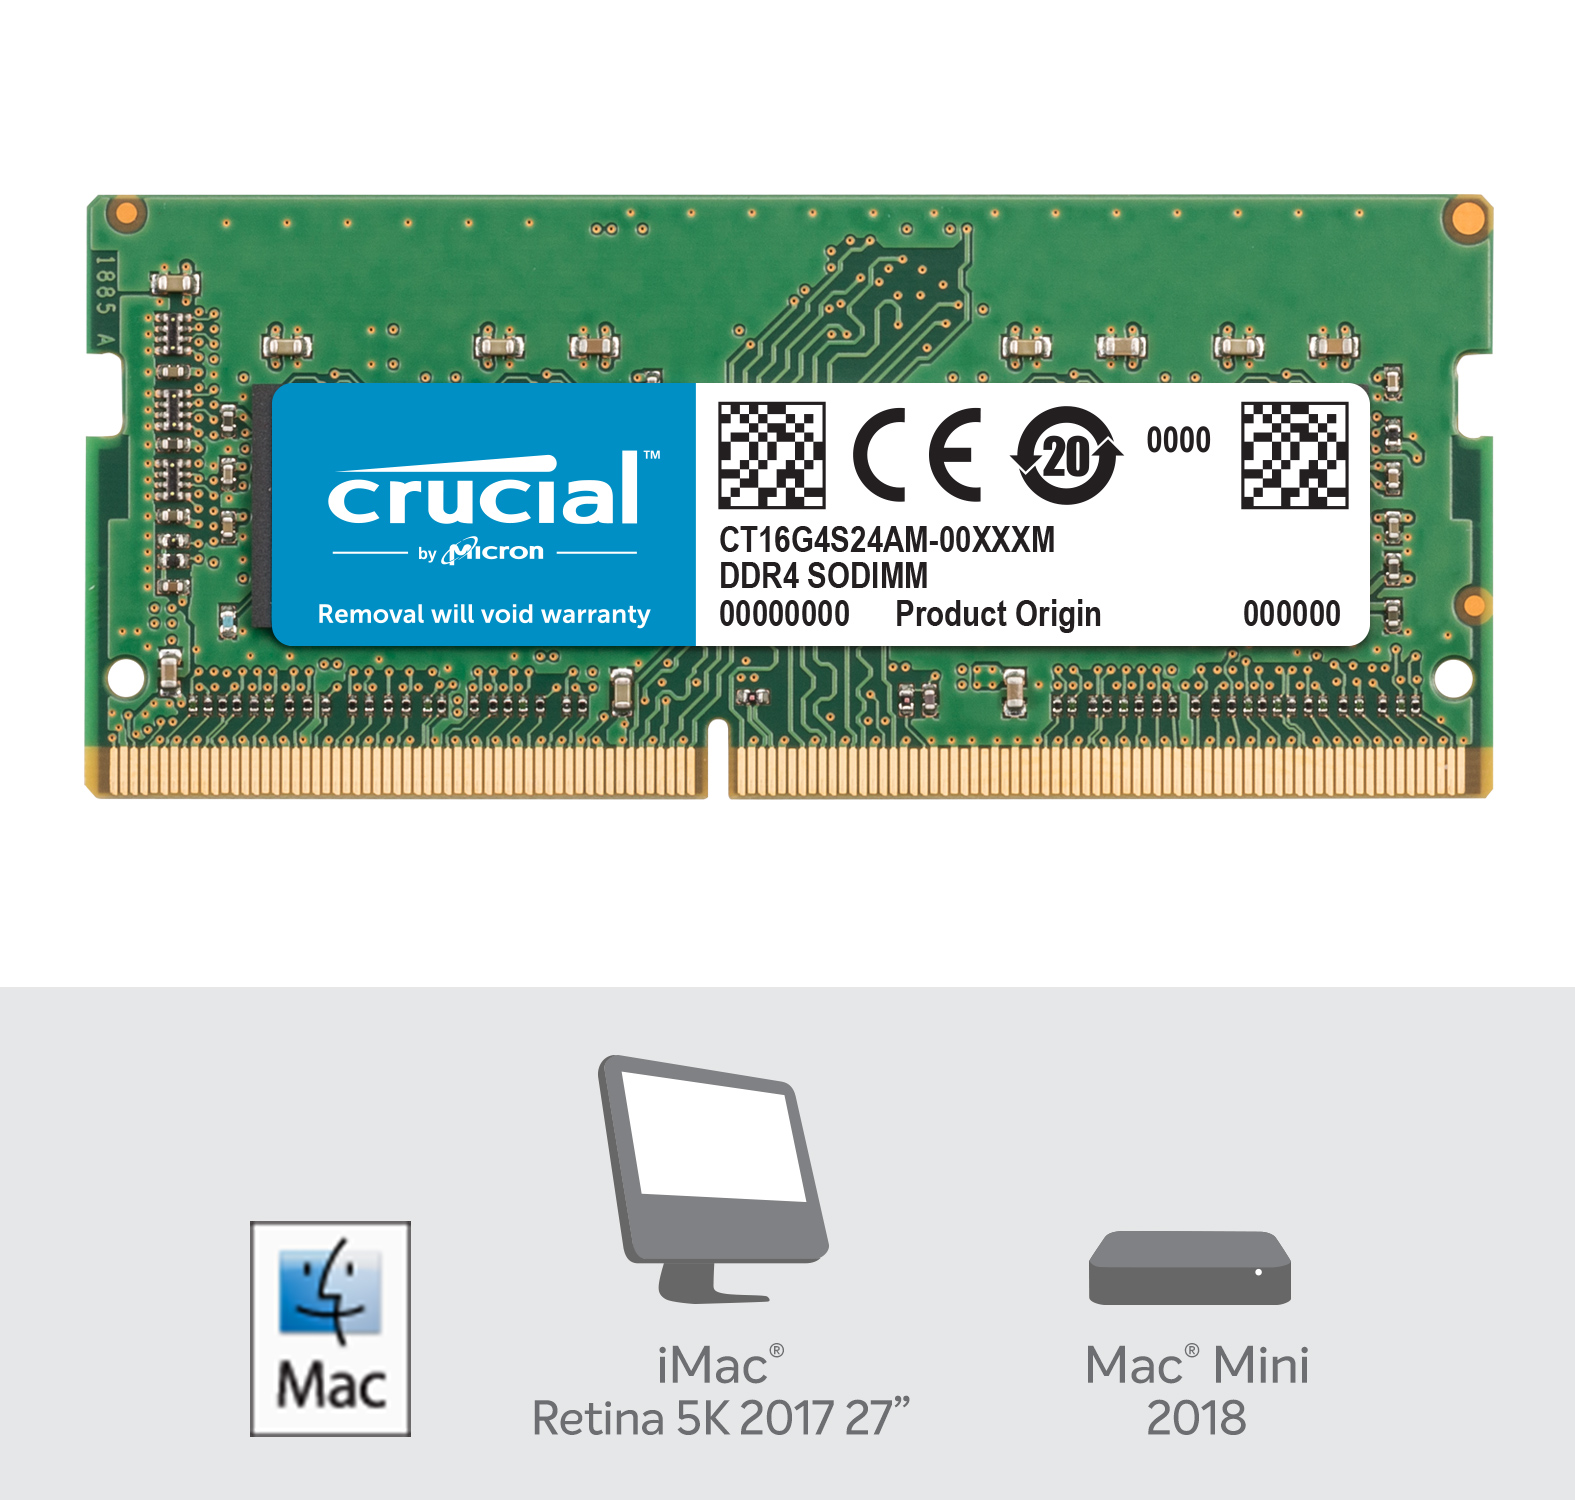 Crucial 16GB DDR4-2400 SODIMM for Mac, CT16G4S24AM